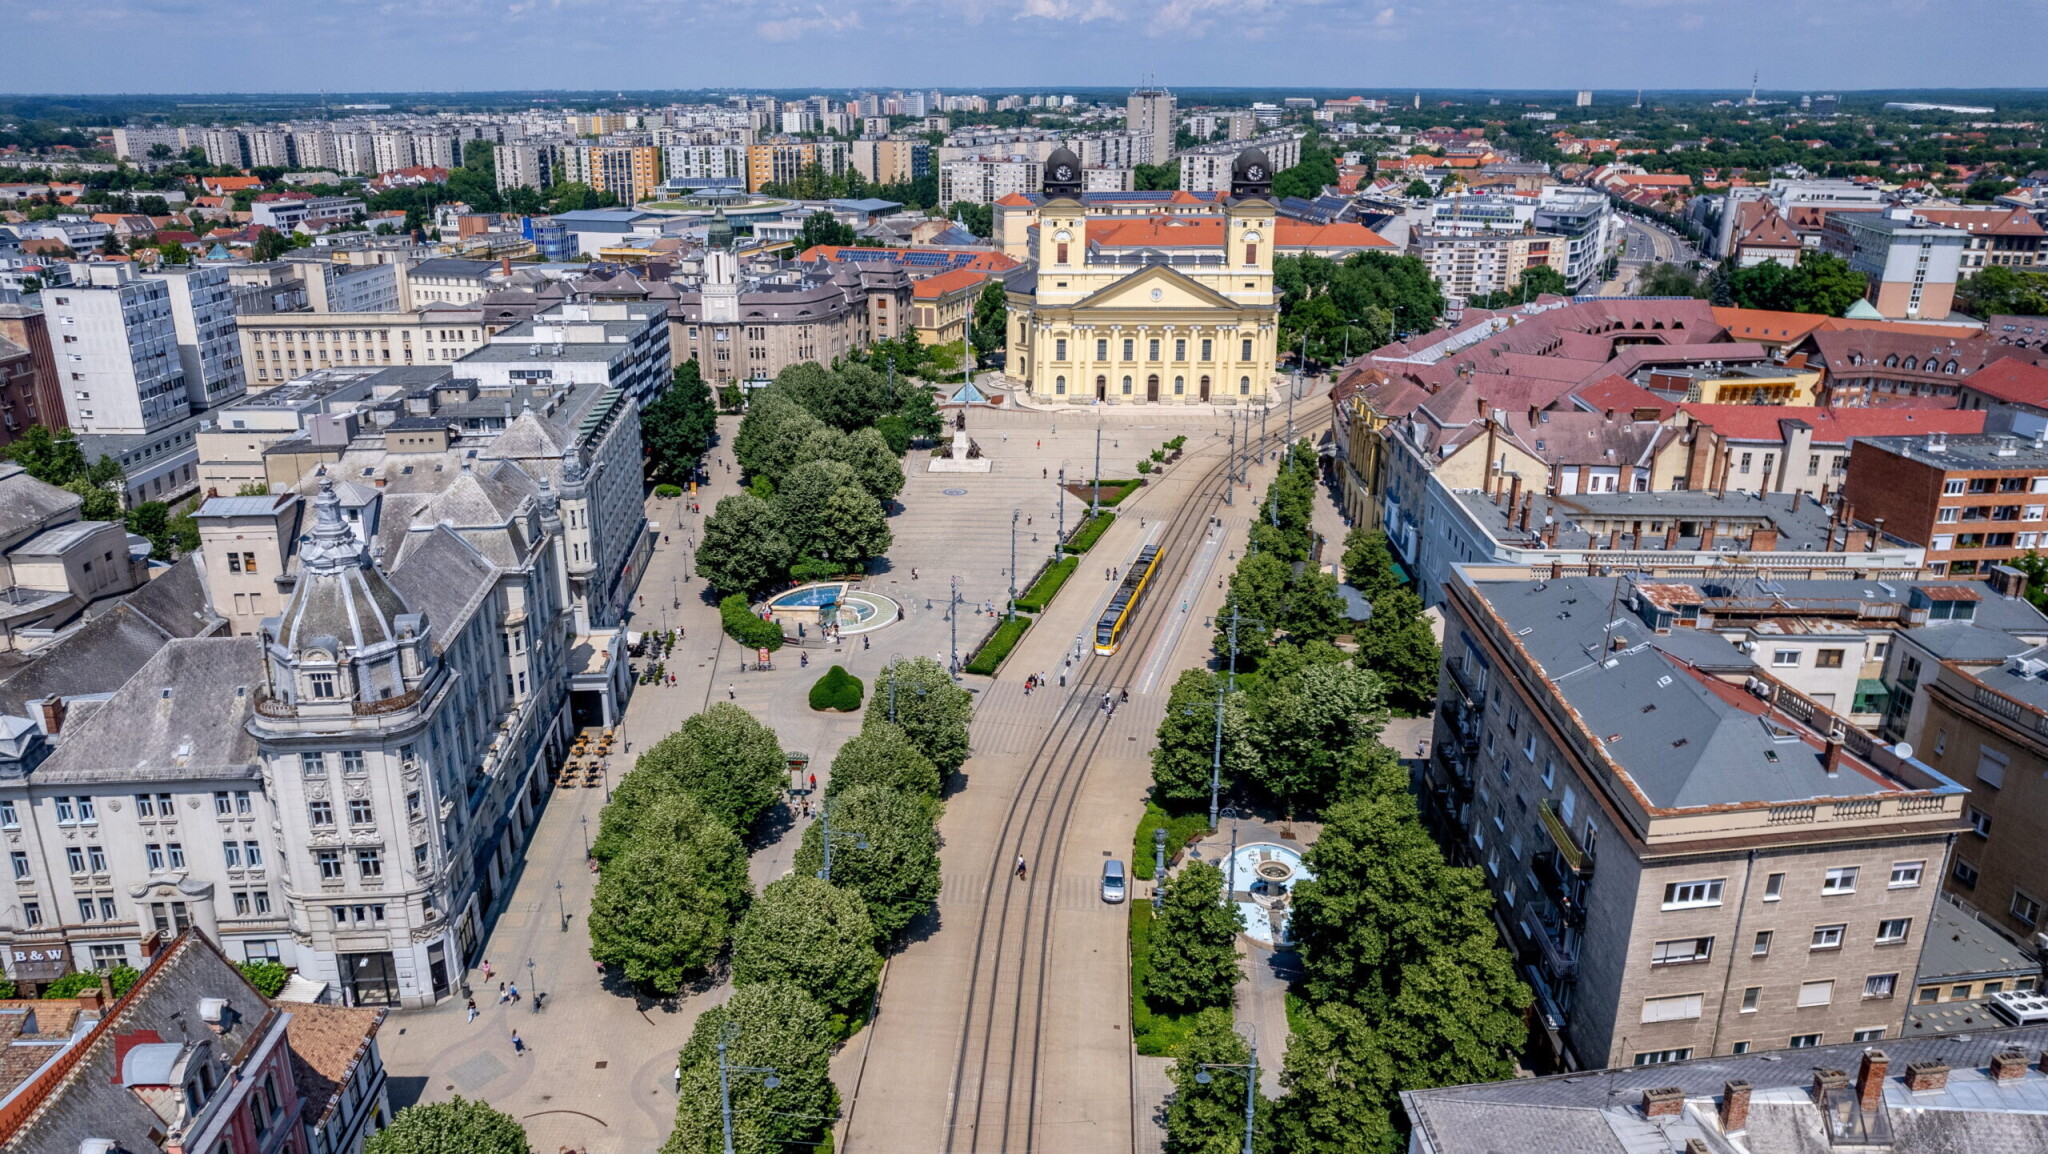 Debrecenben majdnem annyiba kerül lakást bérelni, mint Budapesten